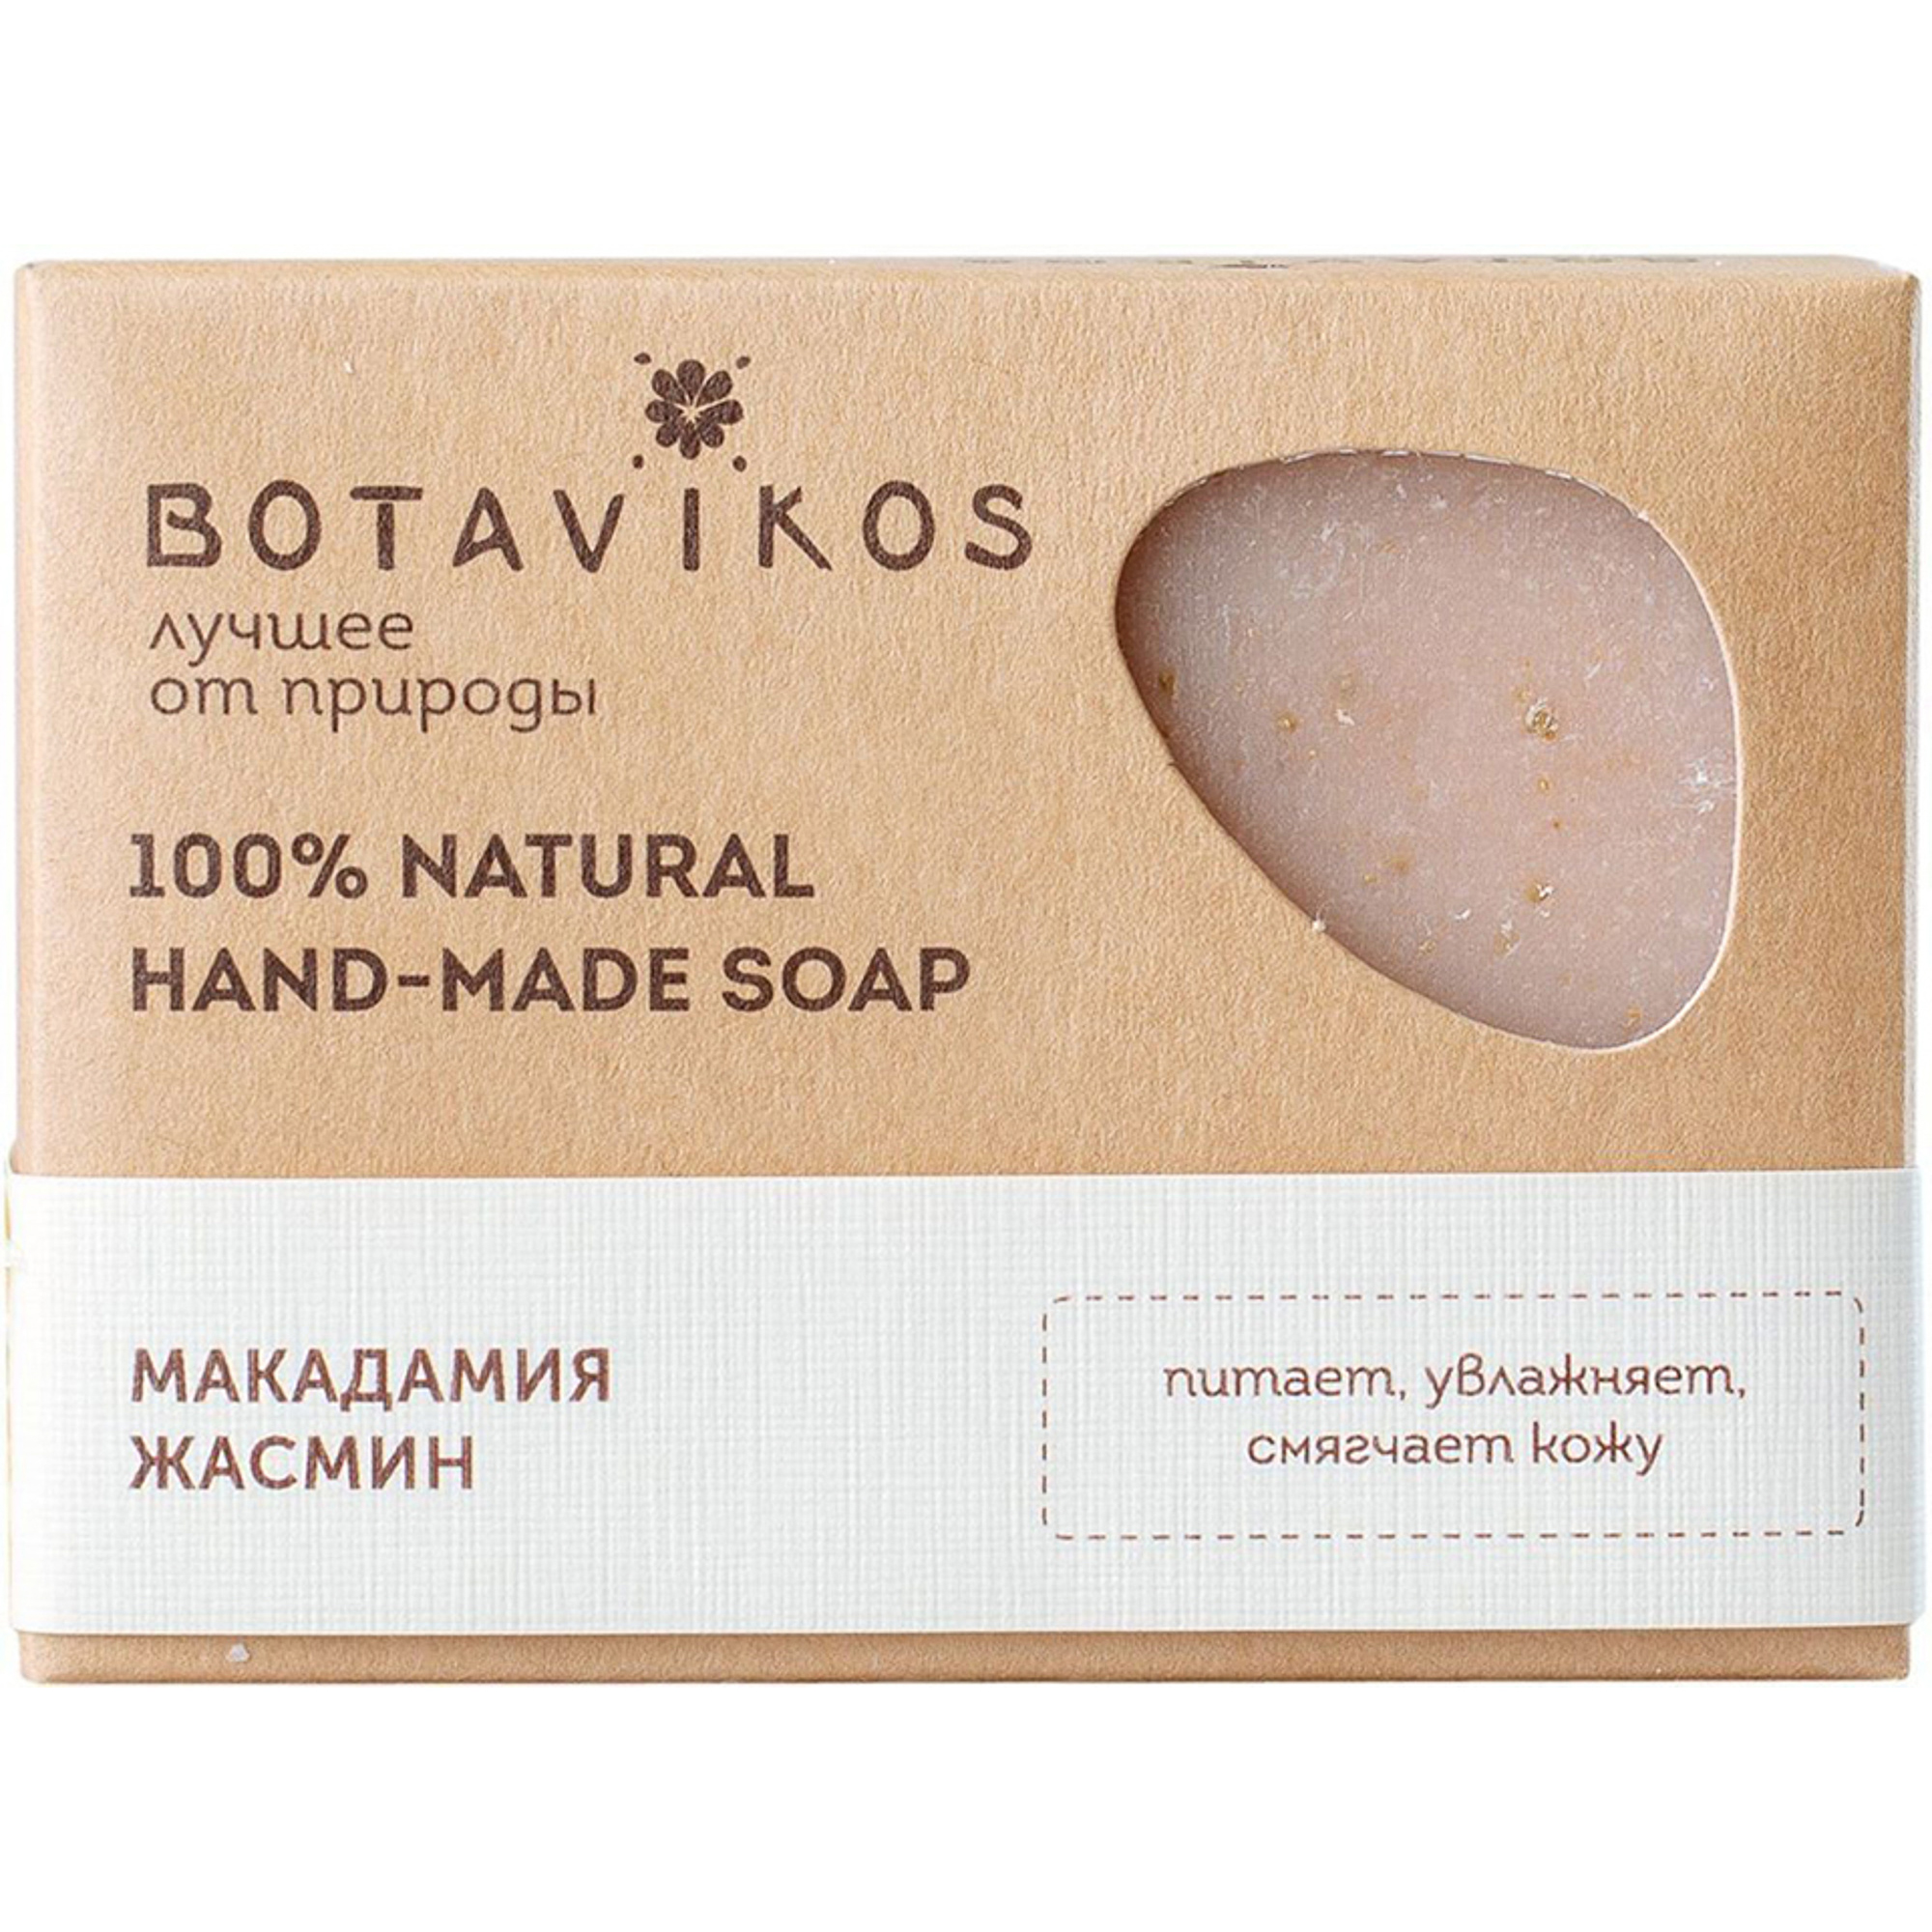 фото Натуральное мыло ручной работы botavikos макадамия жасмин 100 г